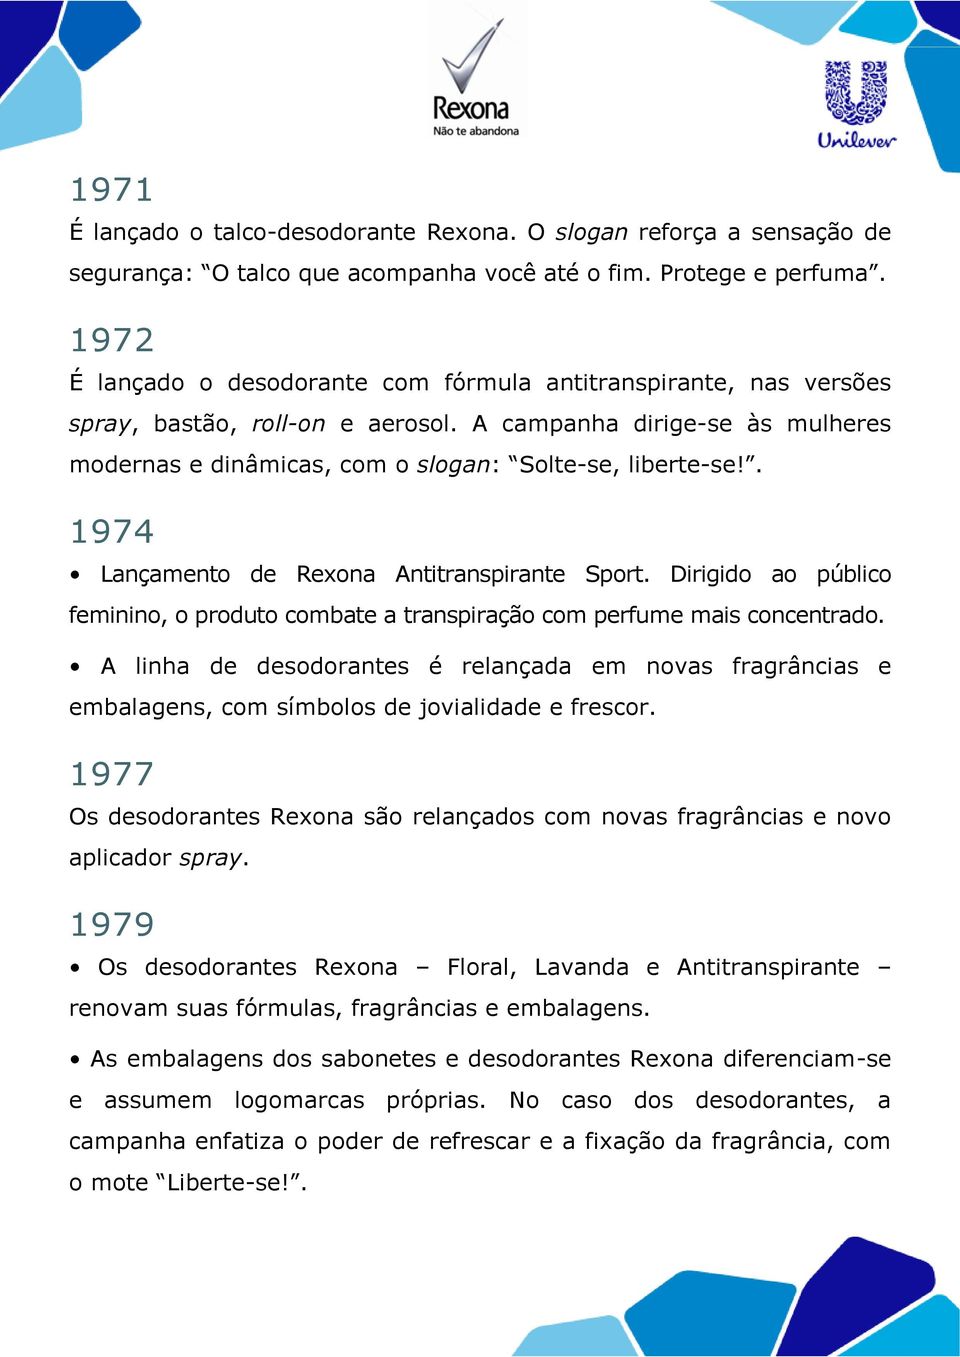 . 1974 Lançamento de Rexona Antitranspirante Sport. Dirigido ao público feminino, o produto combate a transpiração com perfume mais concentrado.